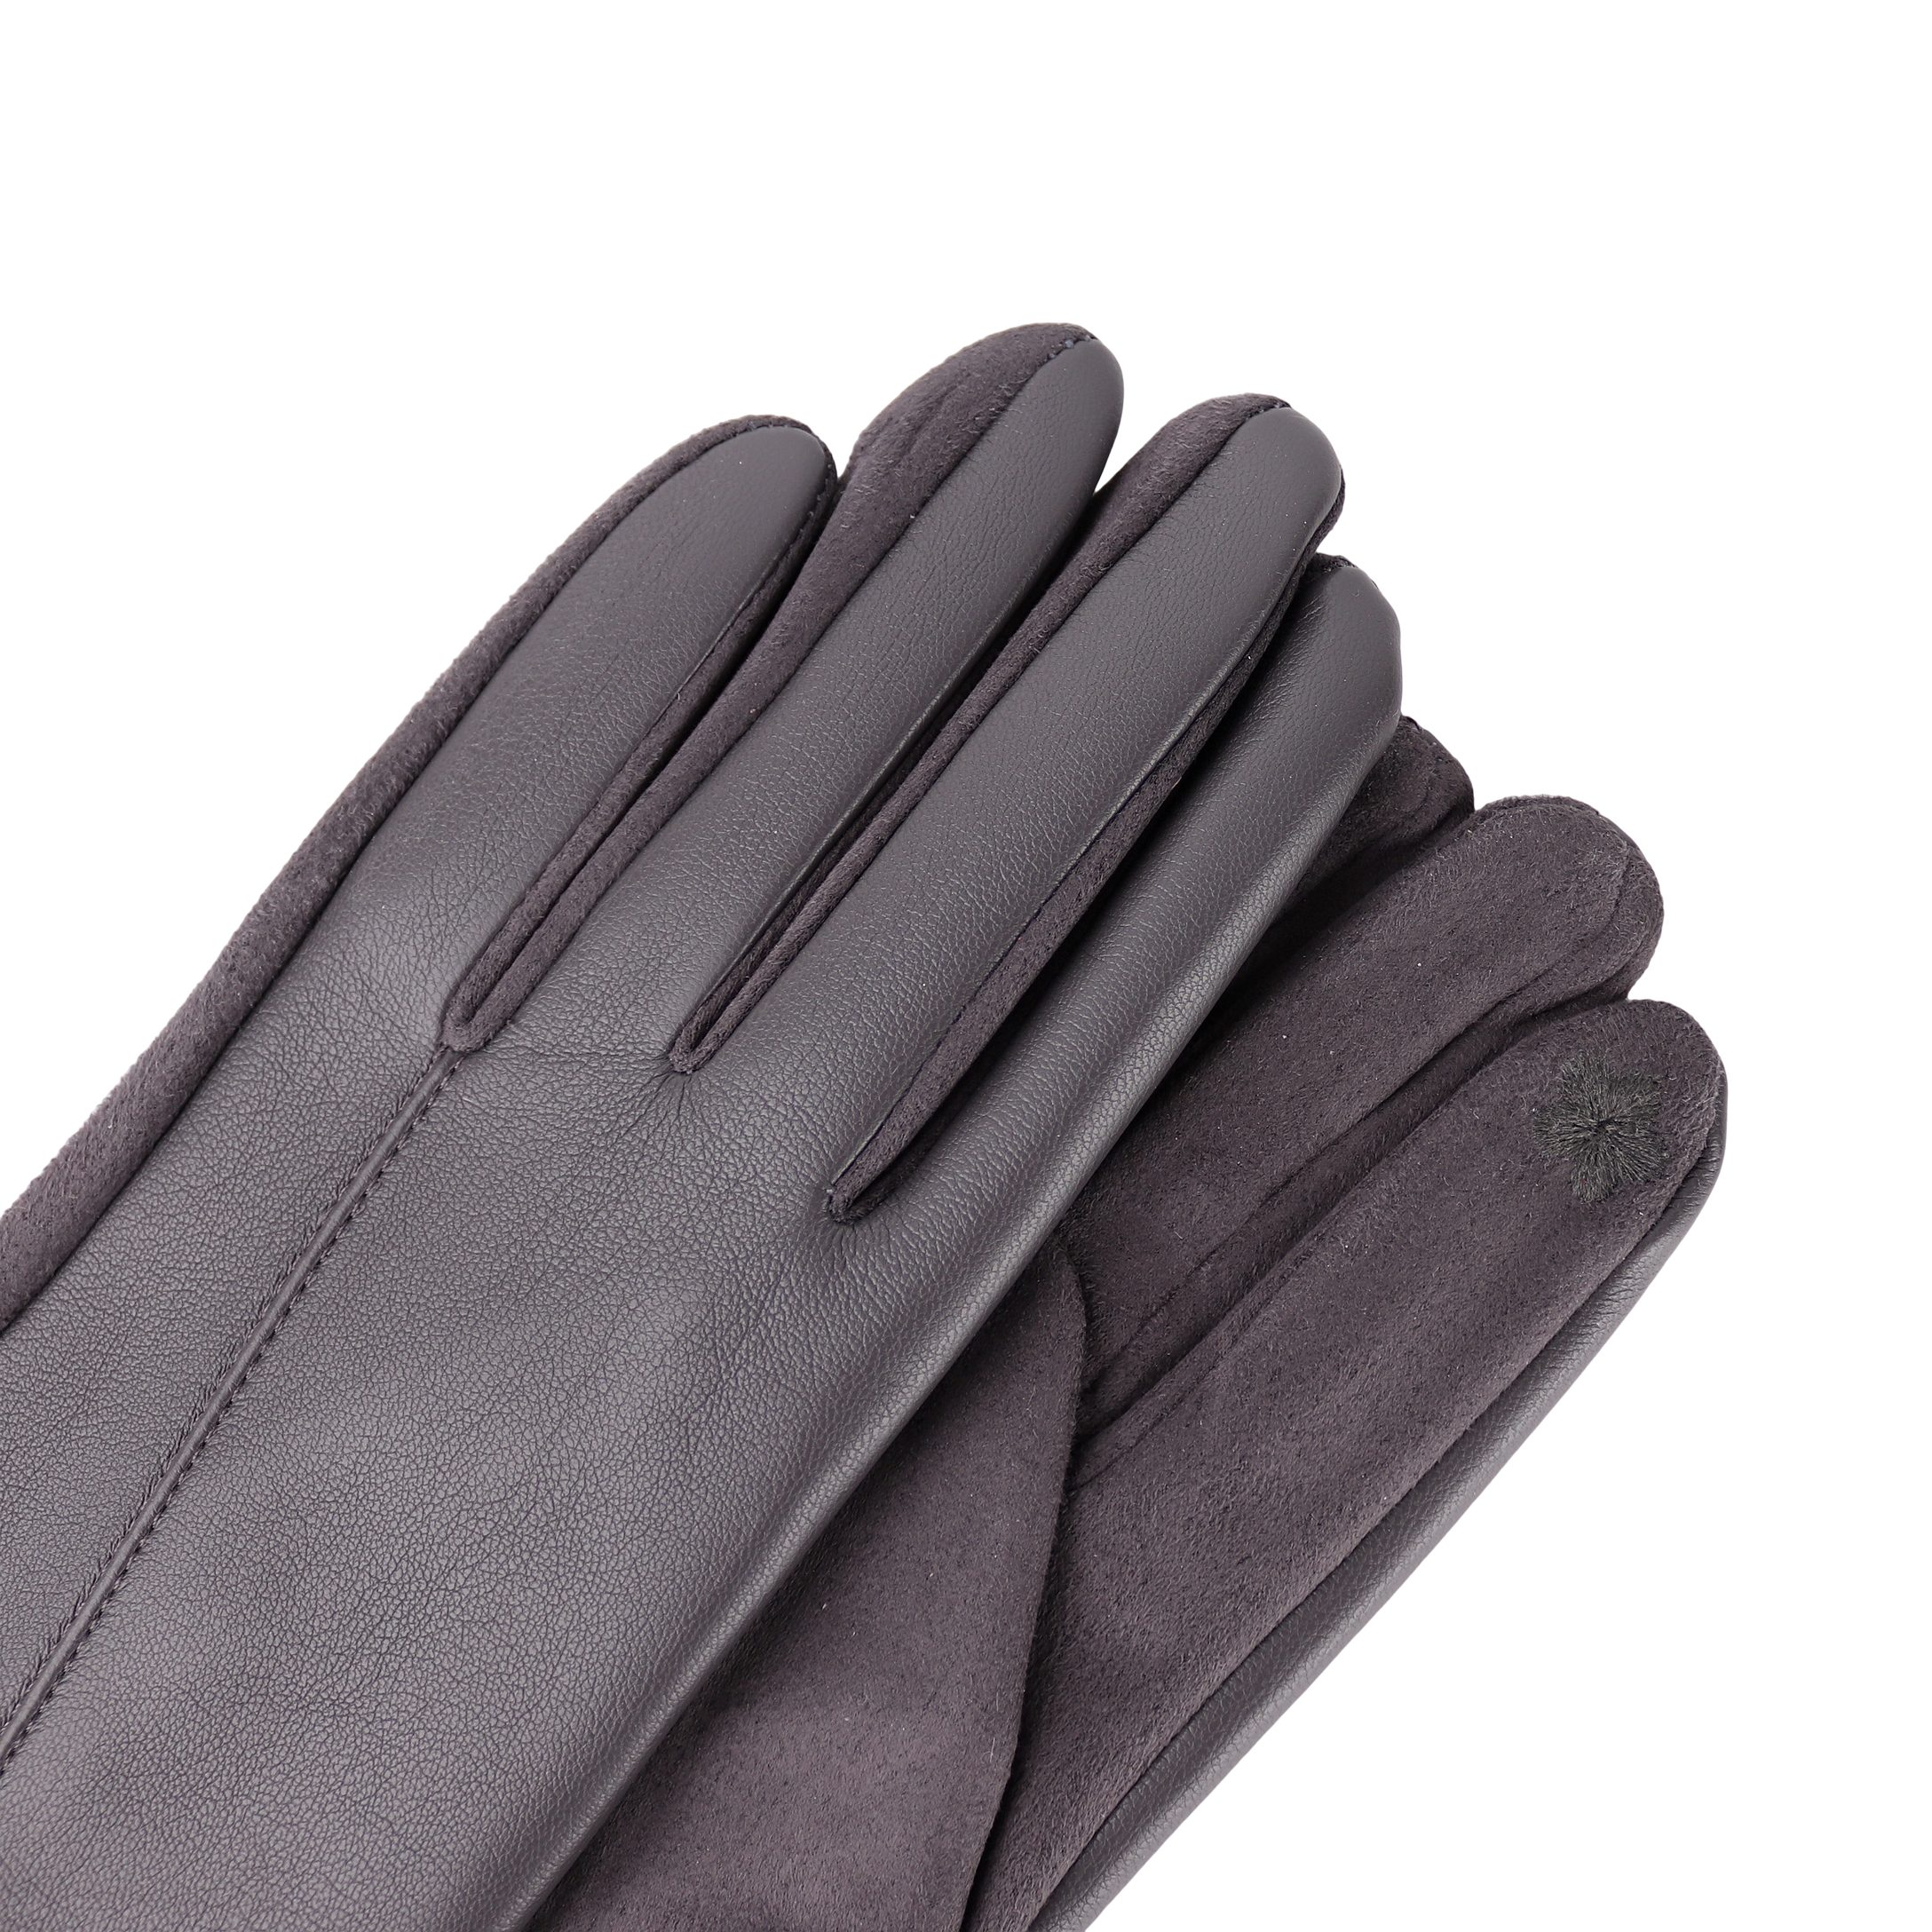 MIRROSI Lederhandschuhe Damen Touchscreen Handschuhe Winter für Dunkelgrau warm oder ideal Warm sehr weich ONESIZE Veganleder aus gefüttert Herbst und